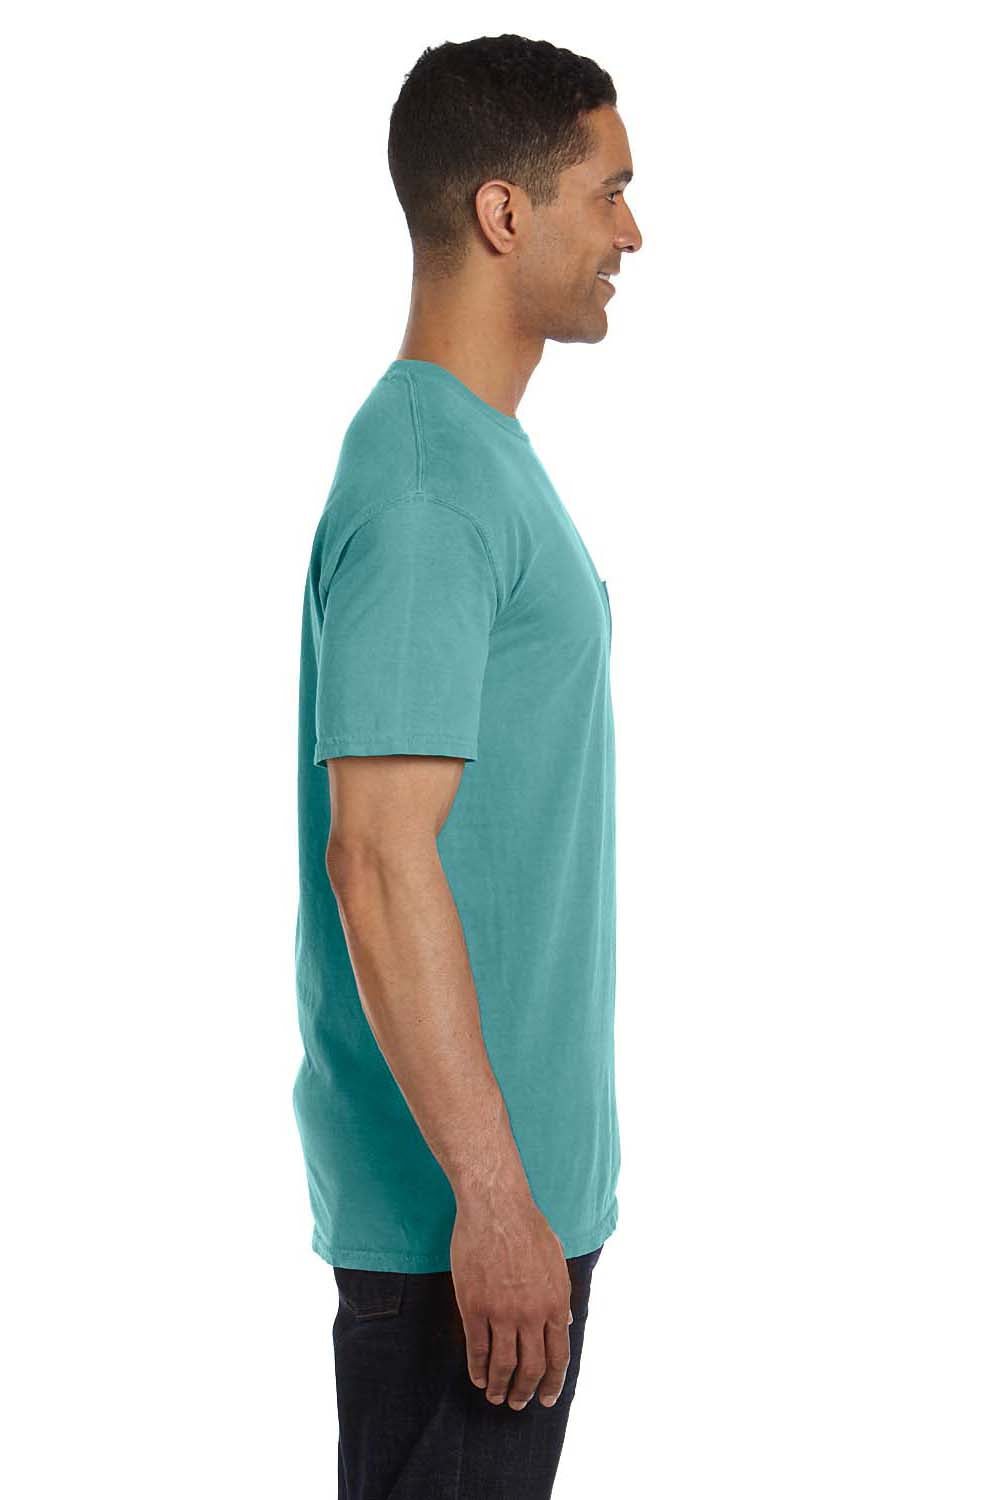 Download Comfort Colors Mens Short Sleeve Crewneck T-Shirt w ...